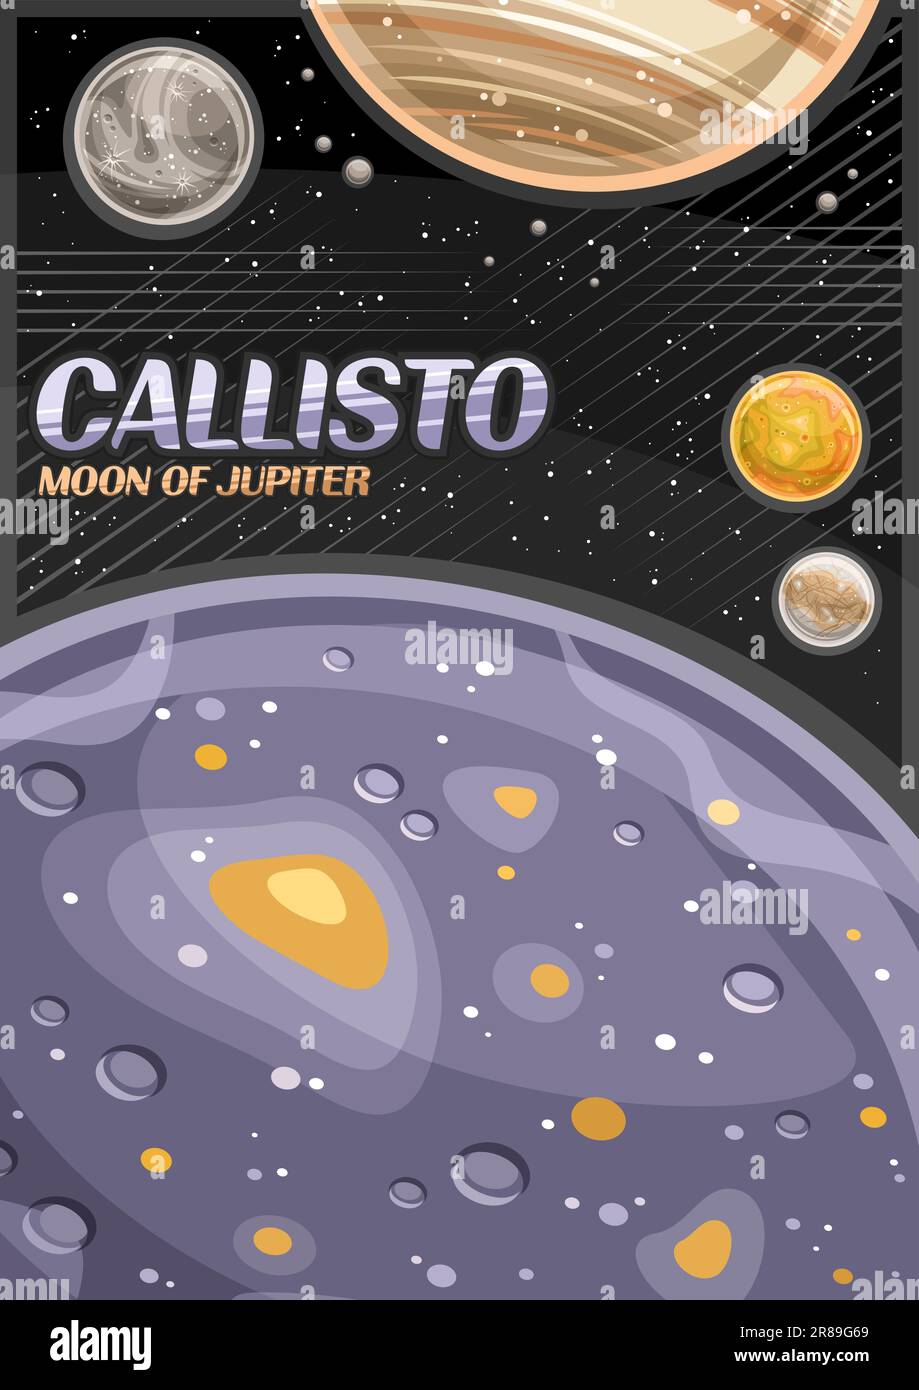 Vektorposter für Callisto, vertikales Banner mit Abbildung eines rotierenden Mondes callisto um den Cartoon-jupiter-Planeten auf schwarzem Sternenhintergrund, Cosmom Stock Vektor